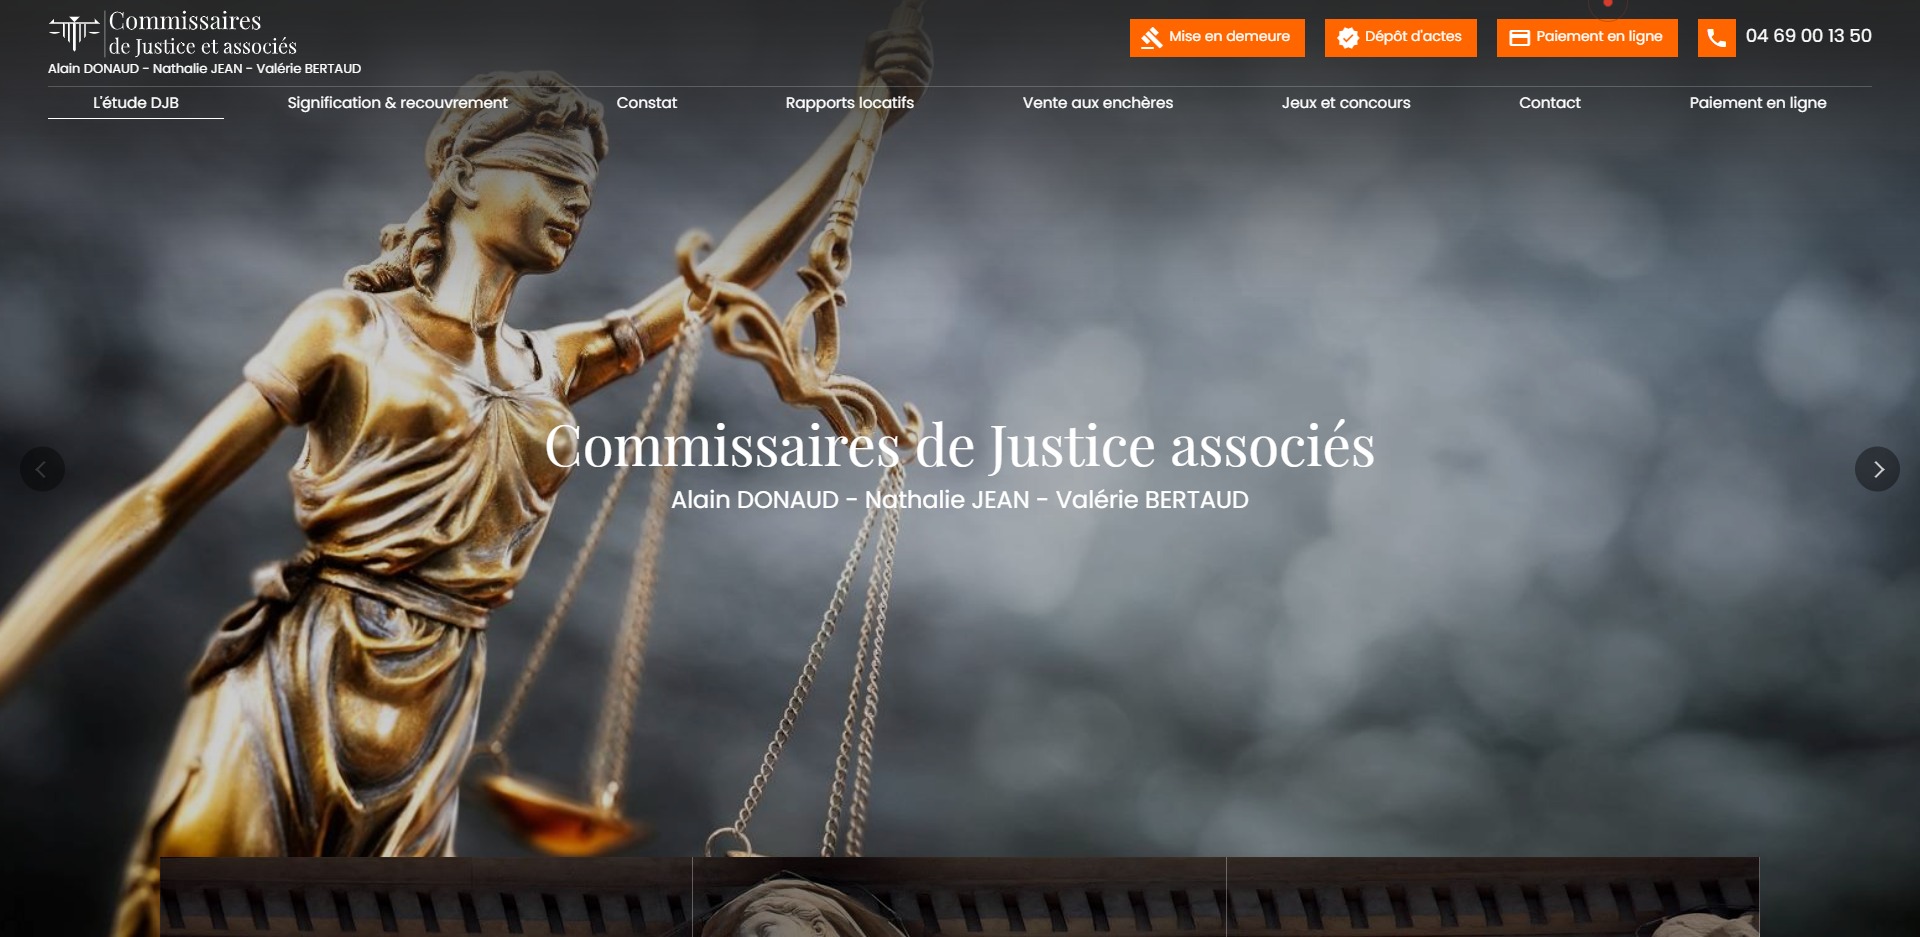 Conception d'un site internet pour un huissier de justice à Salon-de-Provence - DJB Huissiers